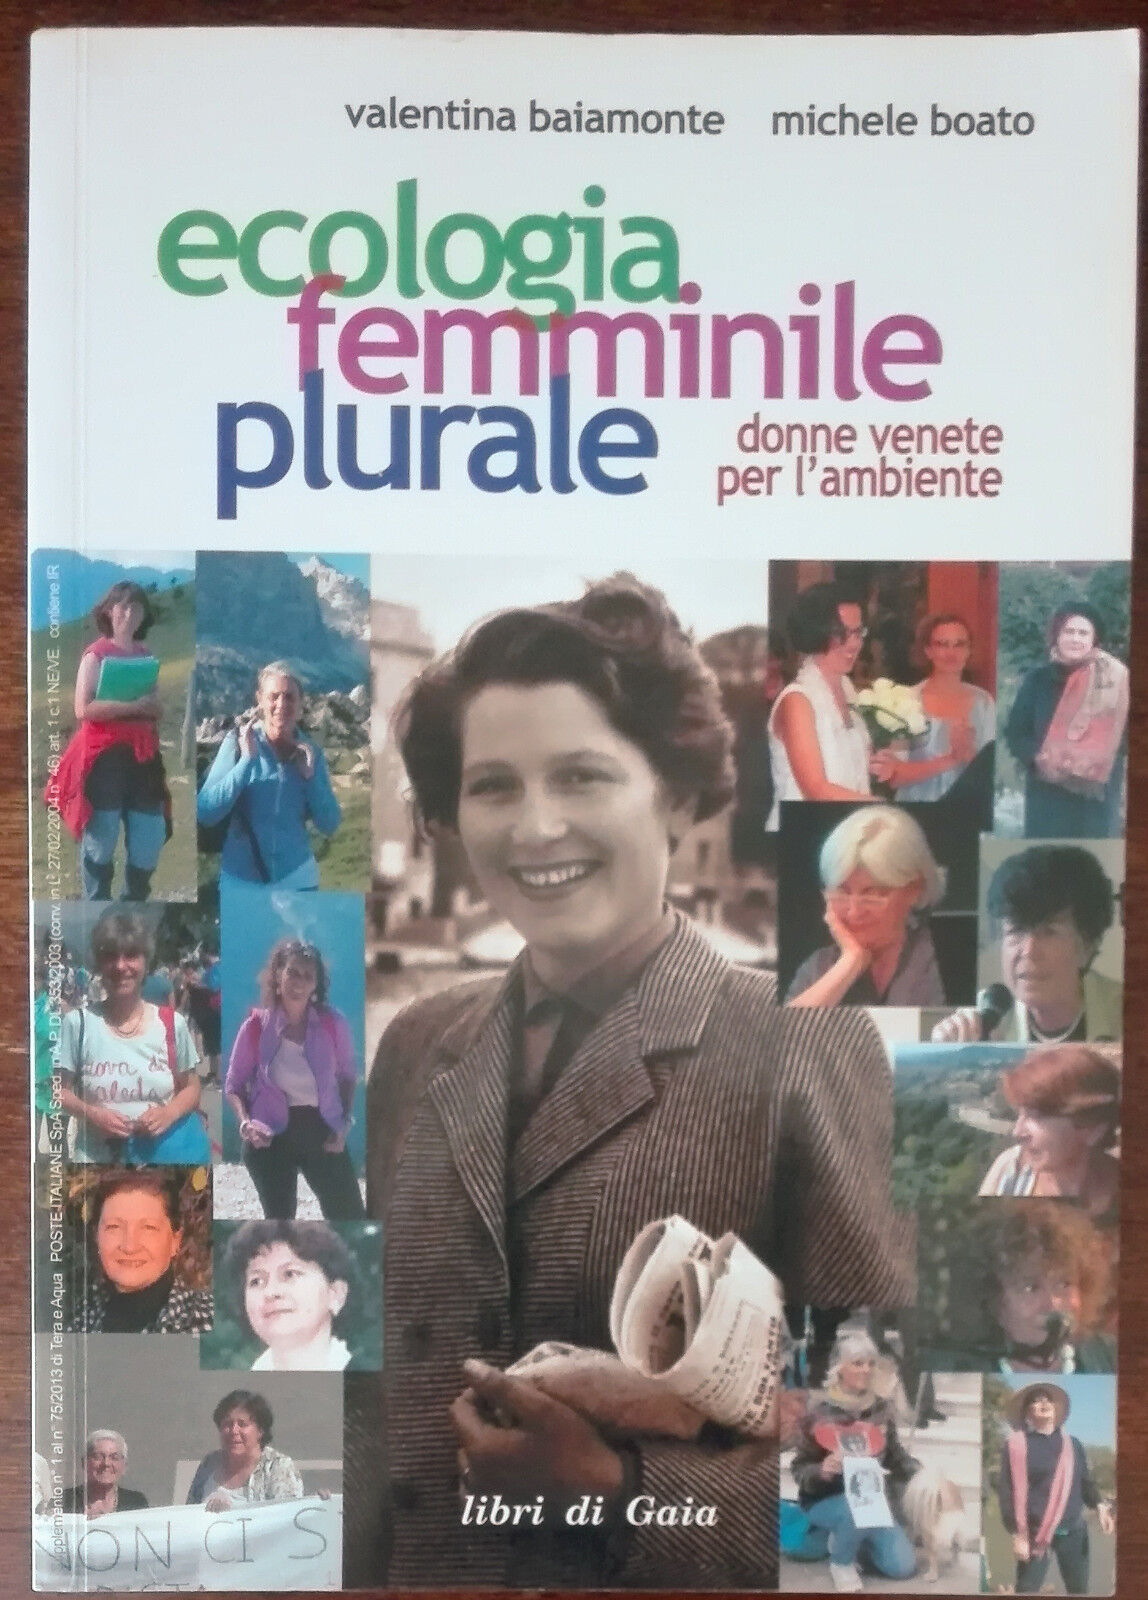 Ecologia femminile plurale - Baiamonte, Boato - libri di Gaia, 2013 - A 